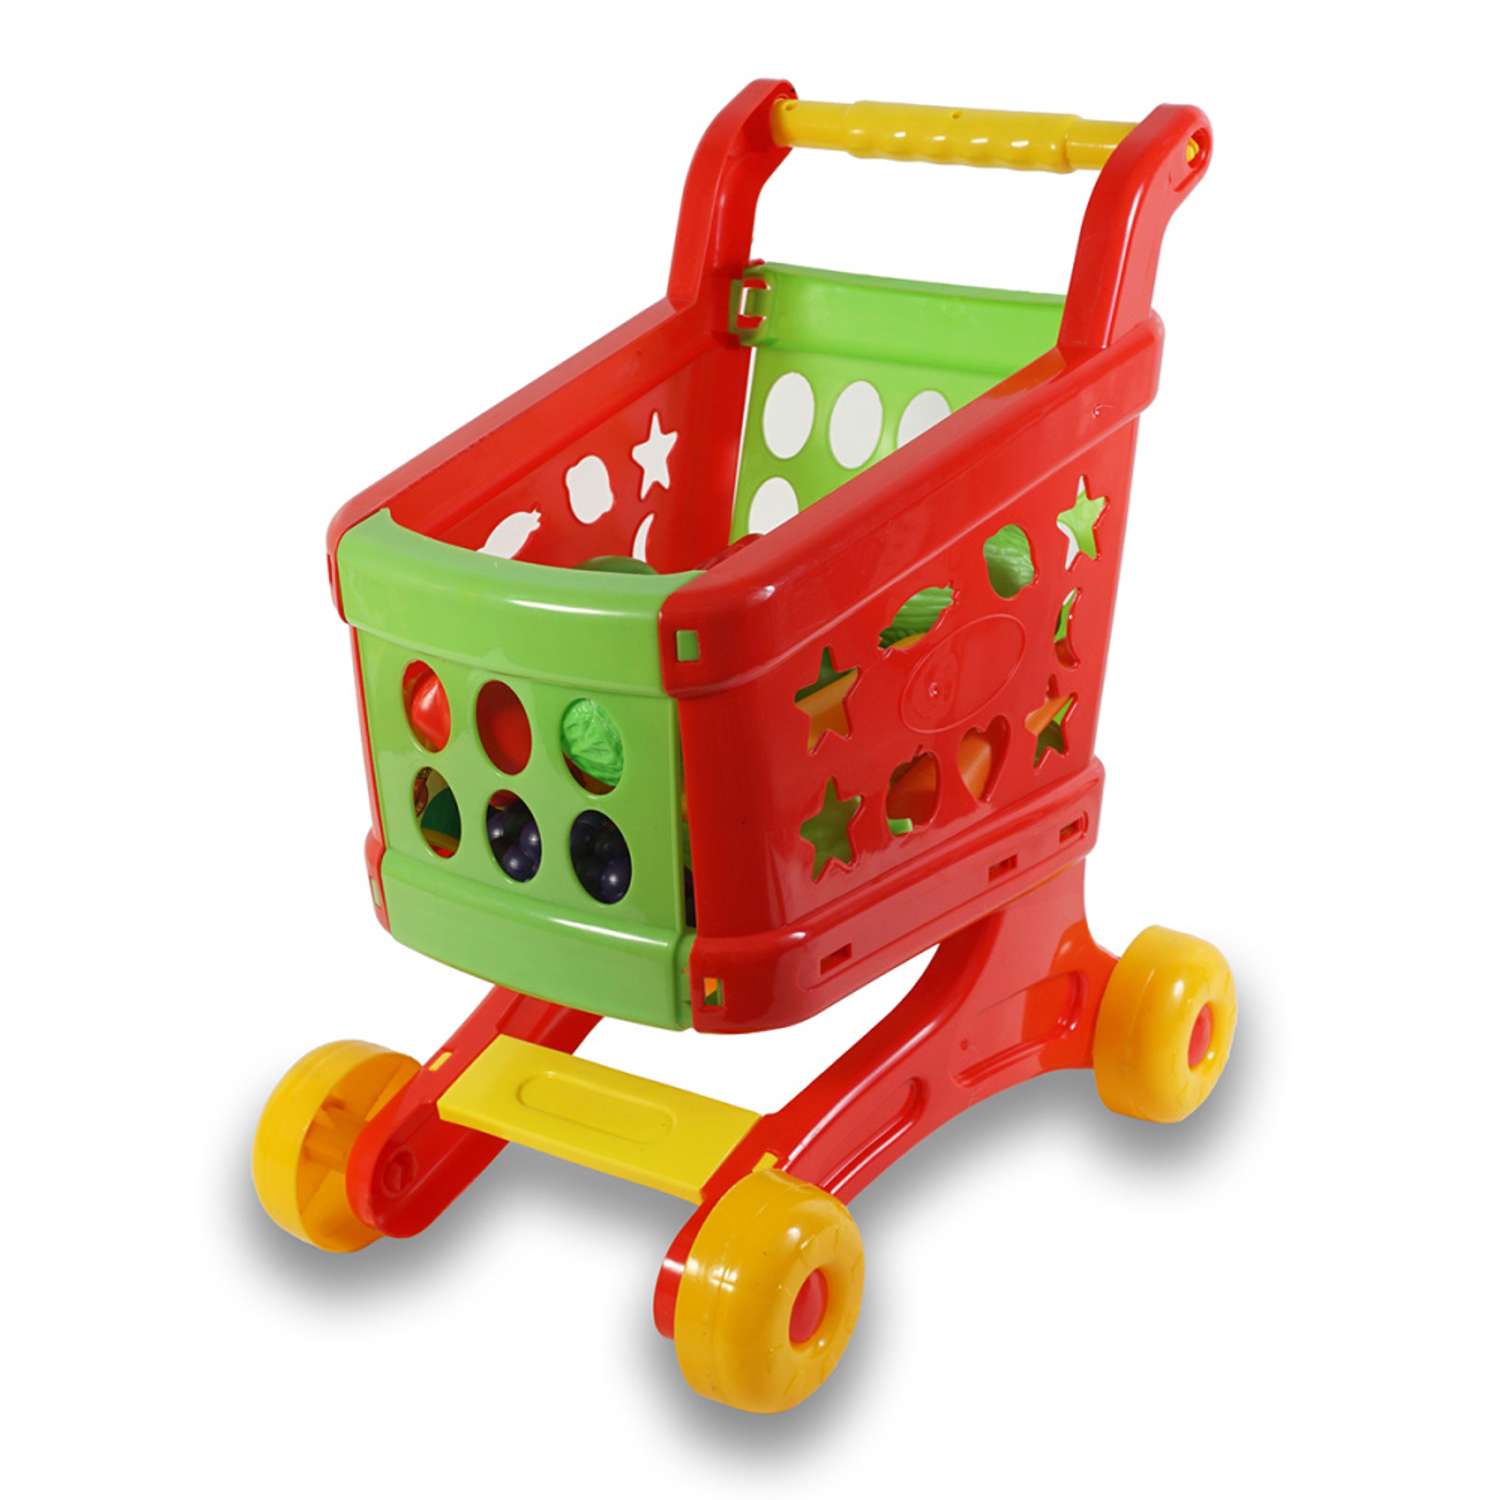 Детский игровой набор TOY MIX Продавца в тележке с игрушечными продуктами - фото 1